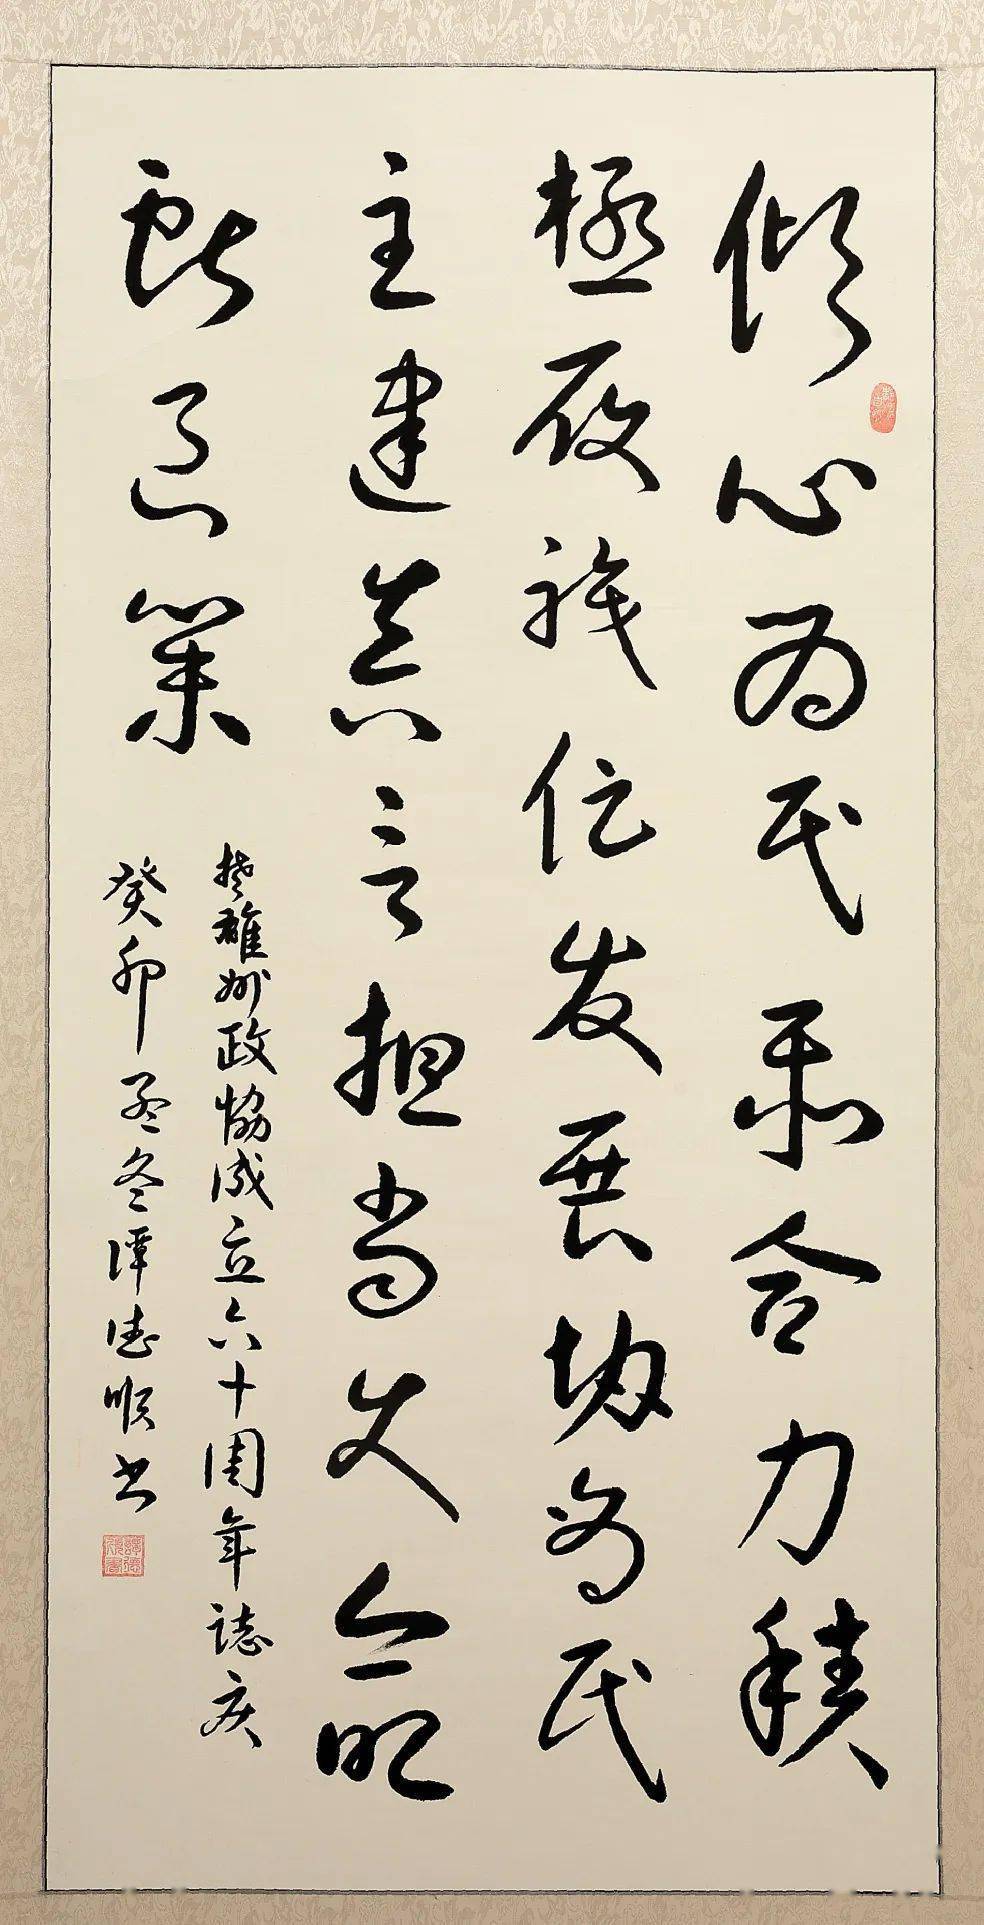 新征程——楚雄州政协成立60周年诗词书画摄影展(三)